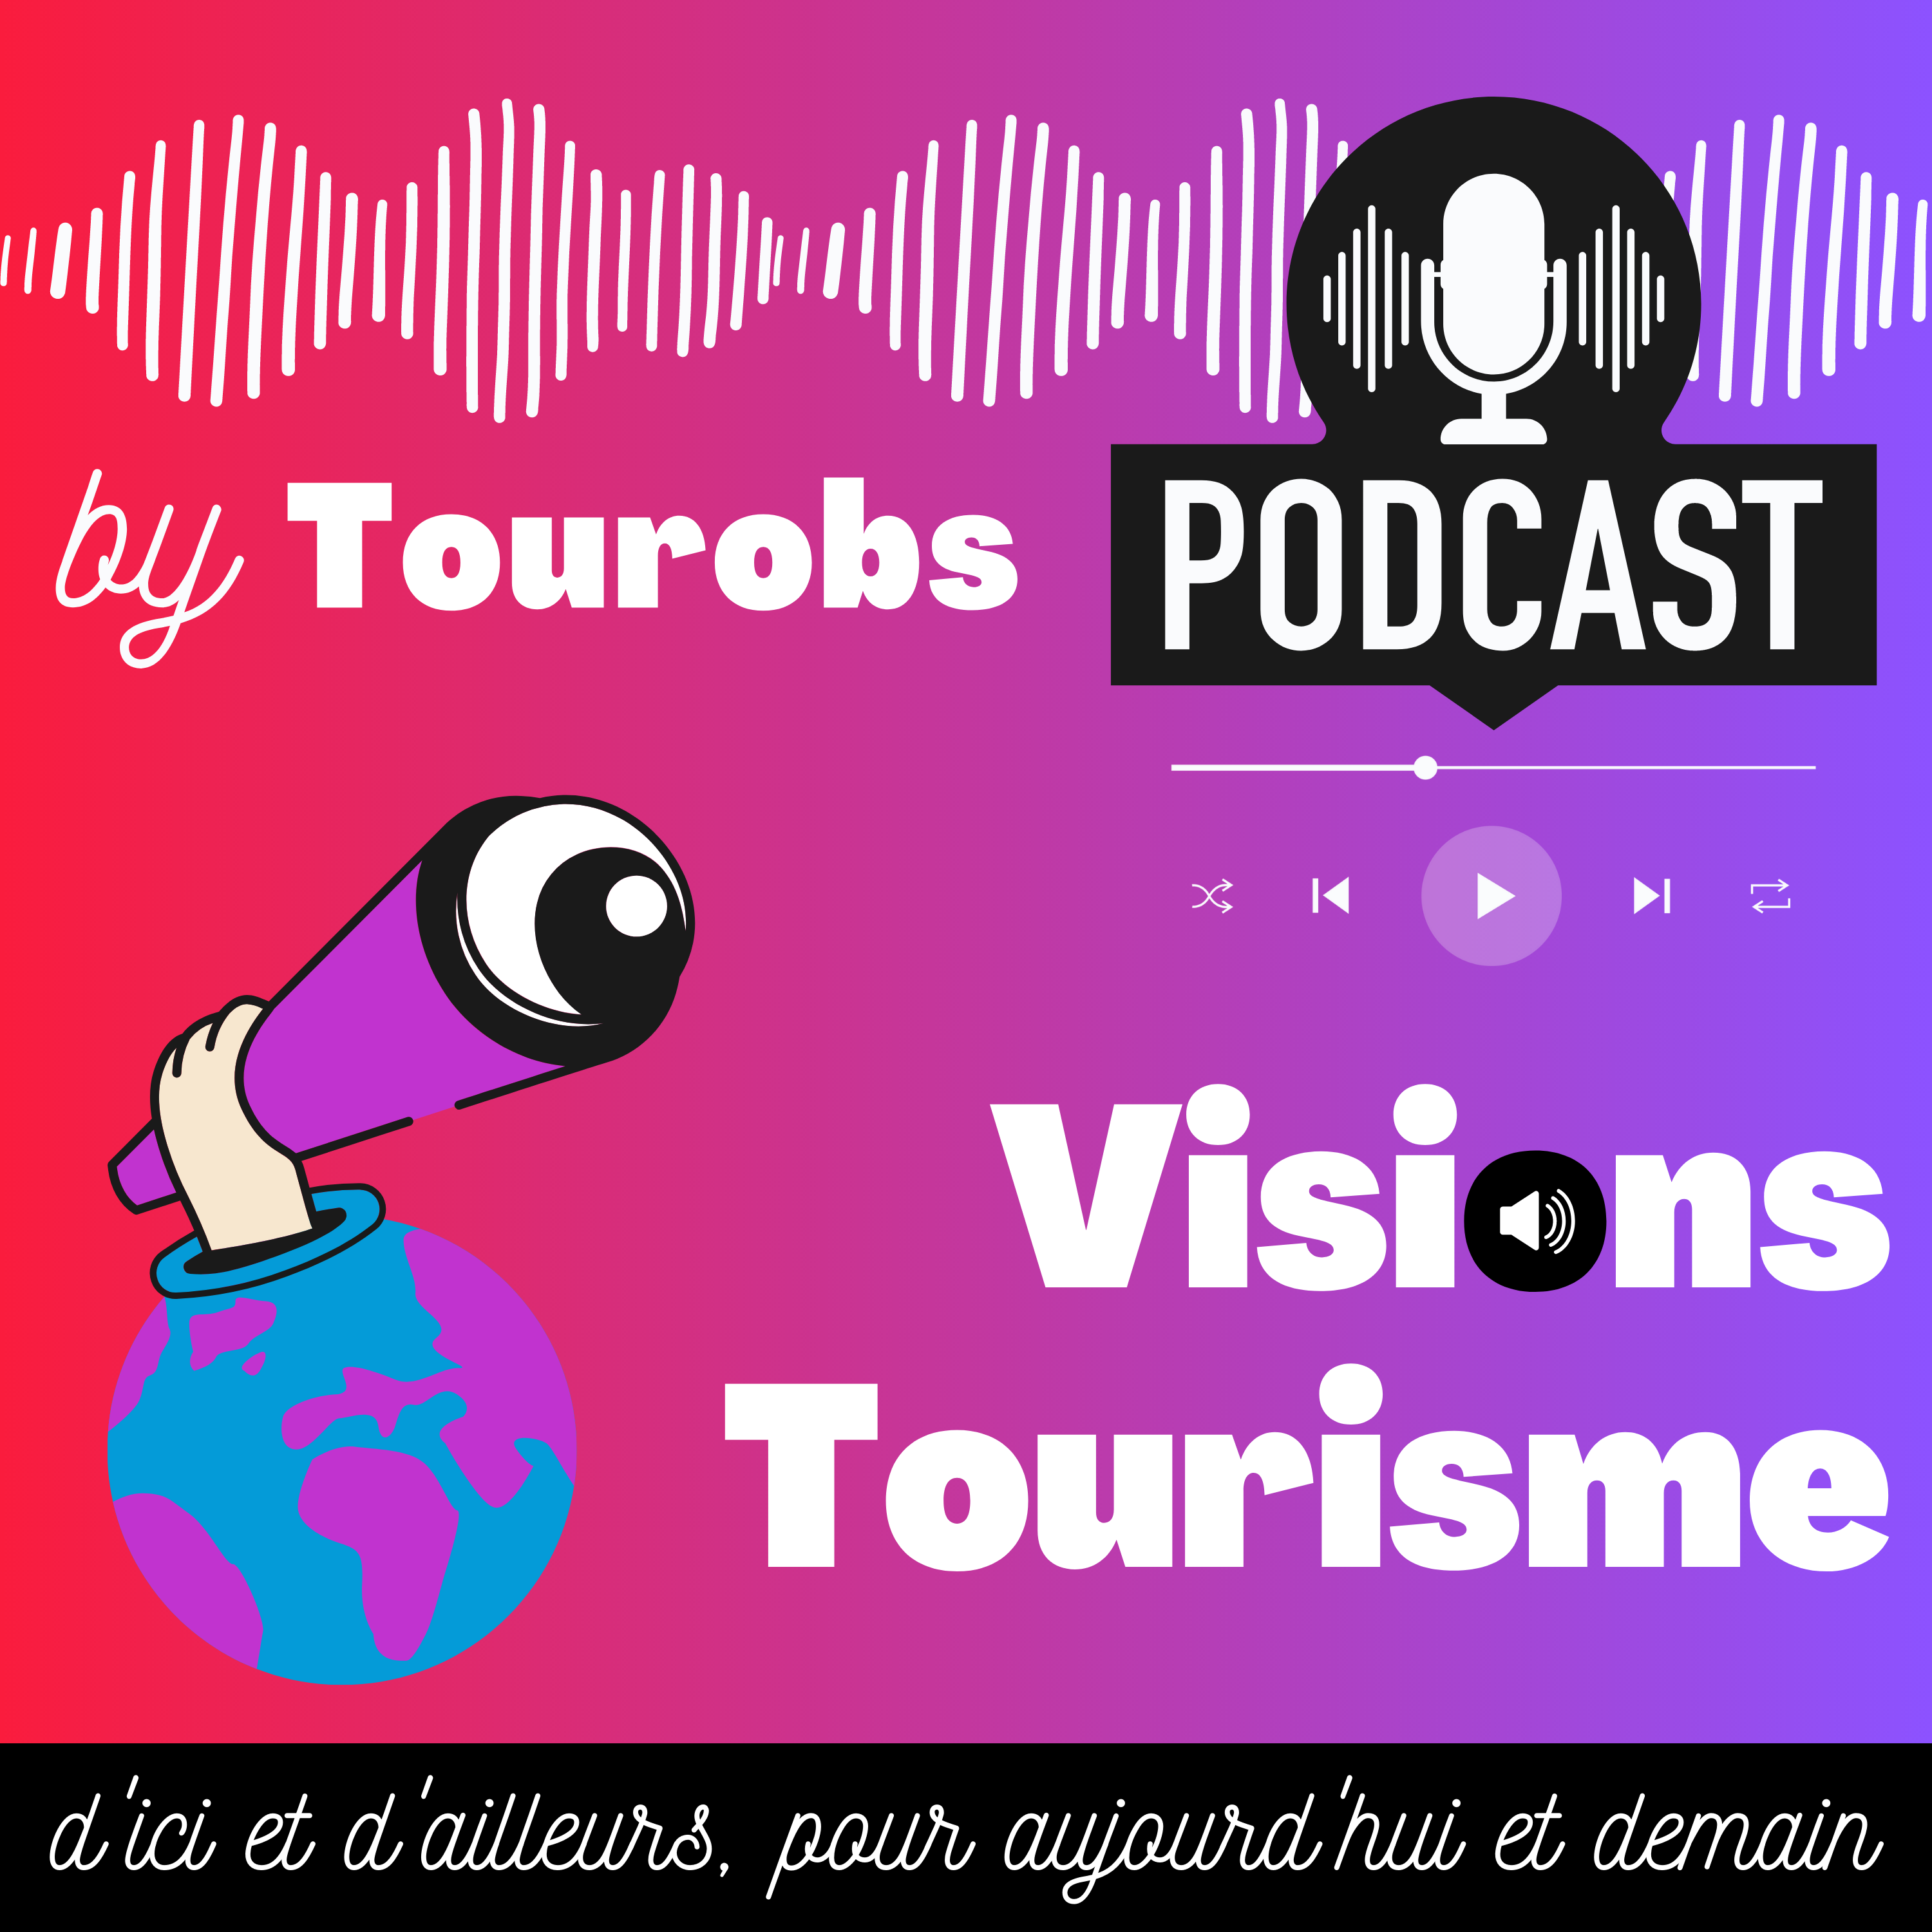 Podcast. Episode #5 – Mini-série Culture et Techno. Au Centre de Réalité Virtuelle Immersive Valais, l’entreprise Génie Culturelle cultive la connaissance et le divertissement sur fond de technologie.